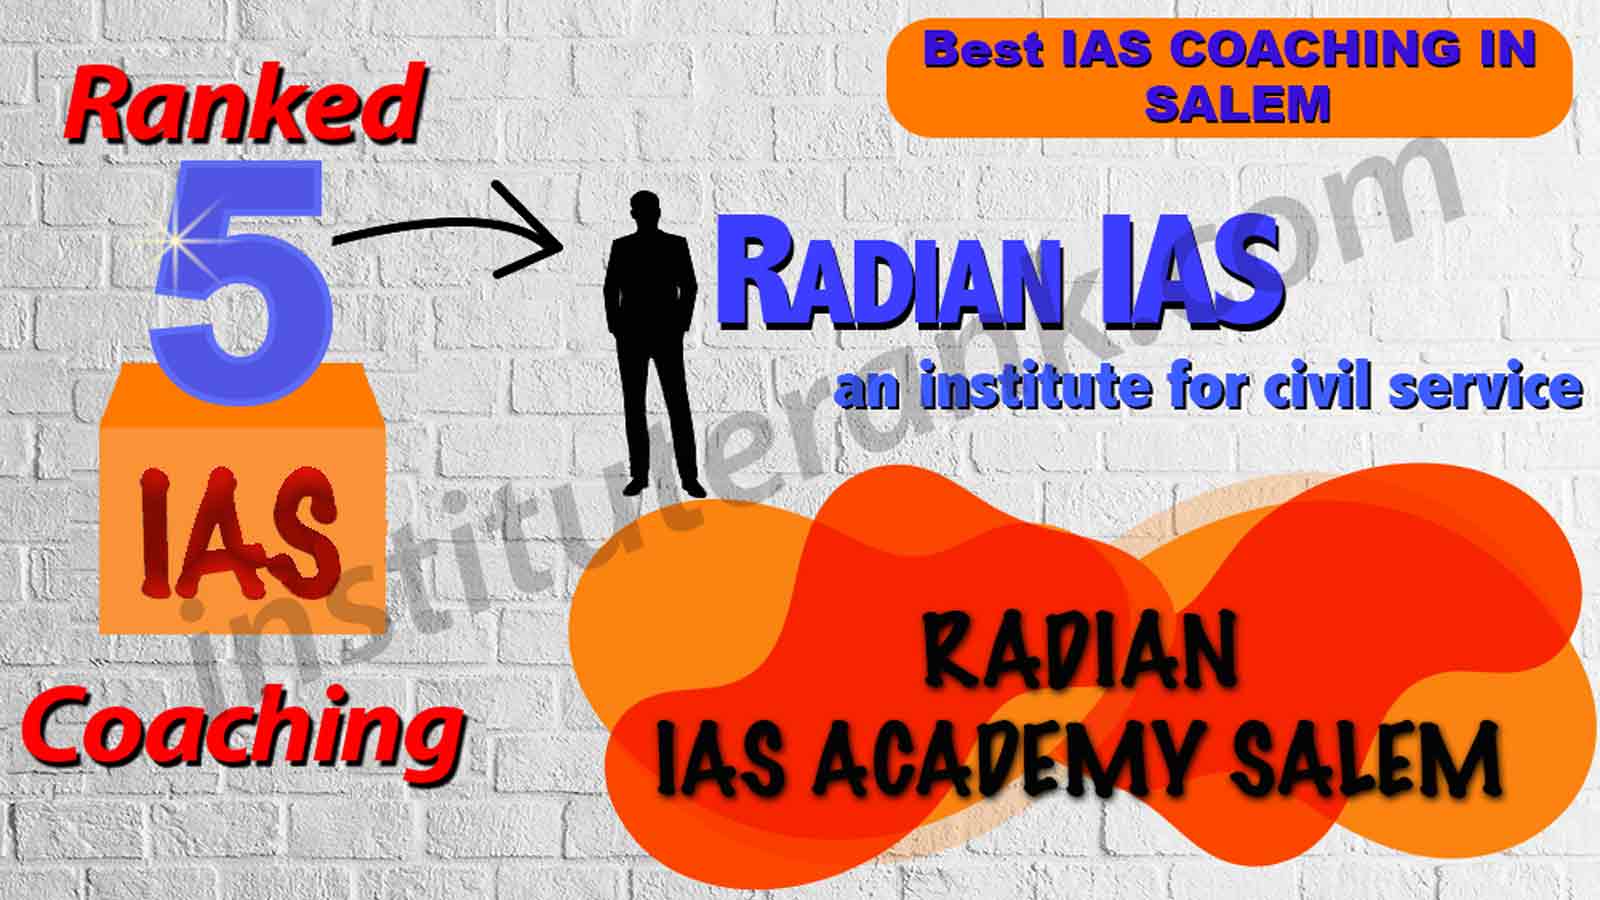 Best IAS Coaching in Salem 